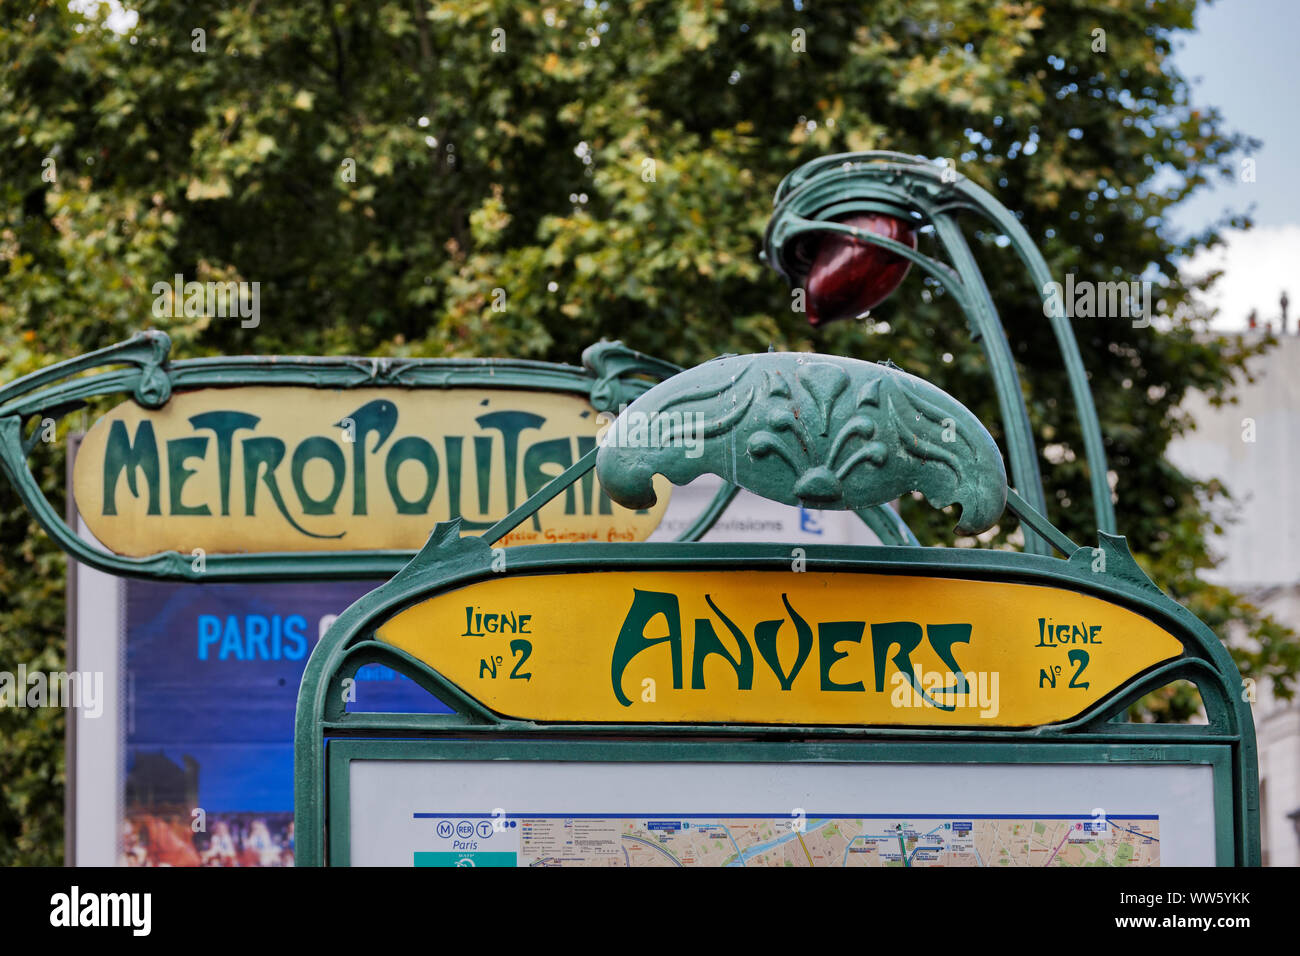 France, Paris, signs, Anvers, Metropolitain, art nouveau Stock Photo